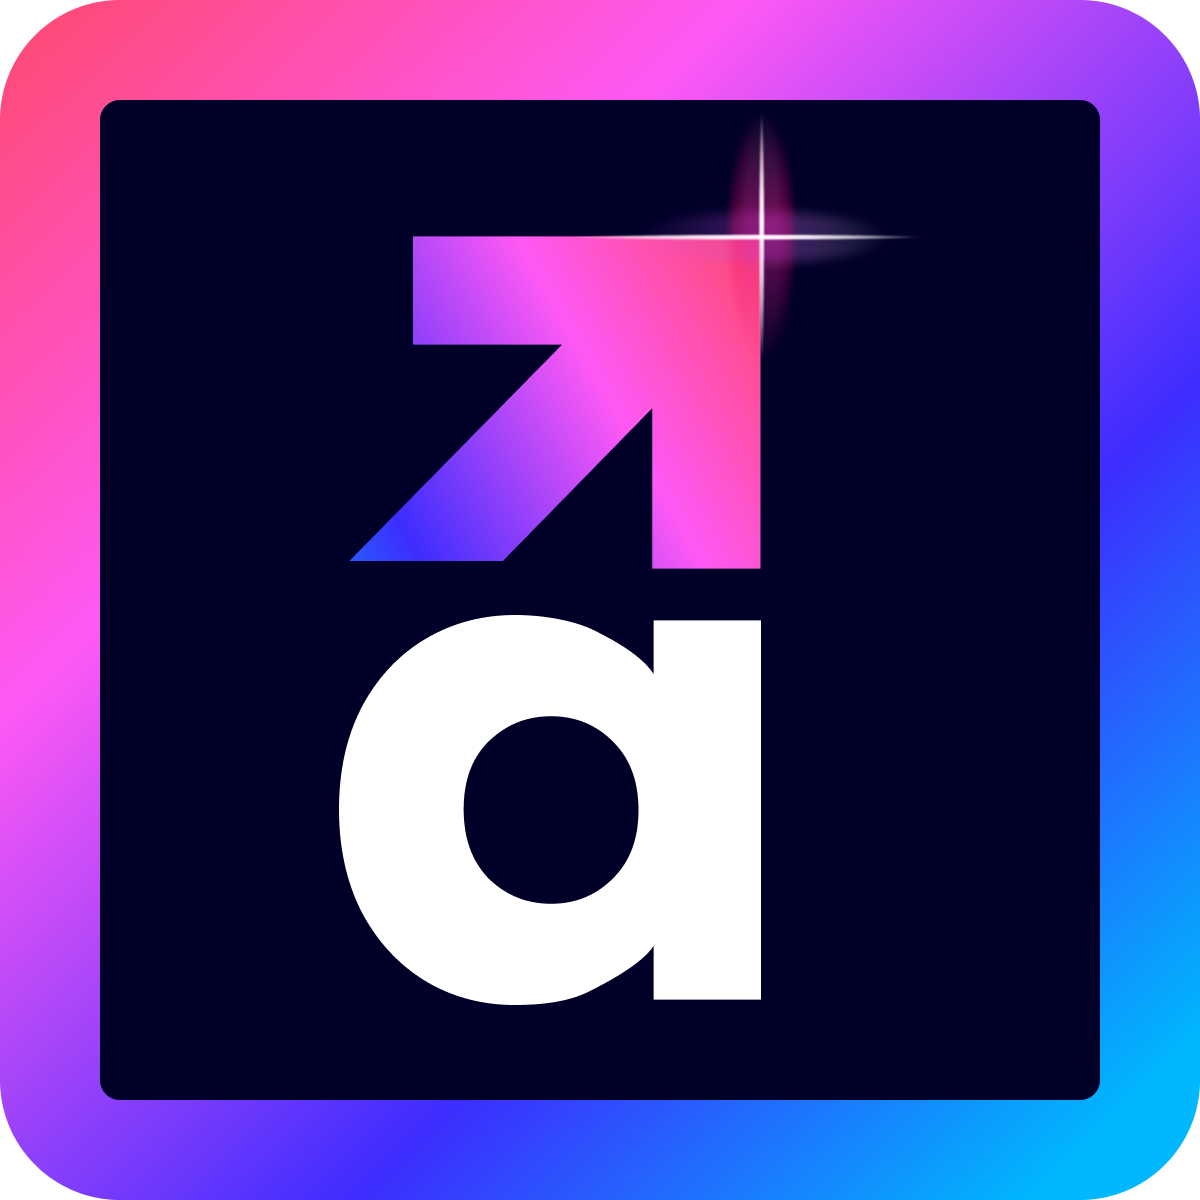 Alpha+: Reviews and Design Shopify App